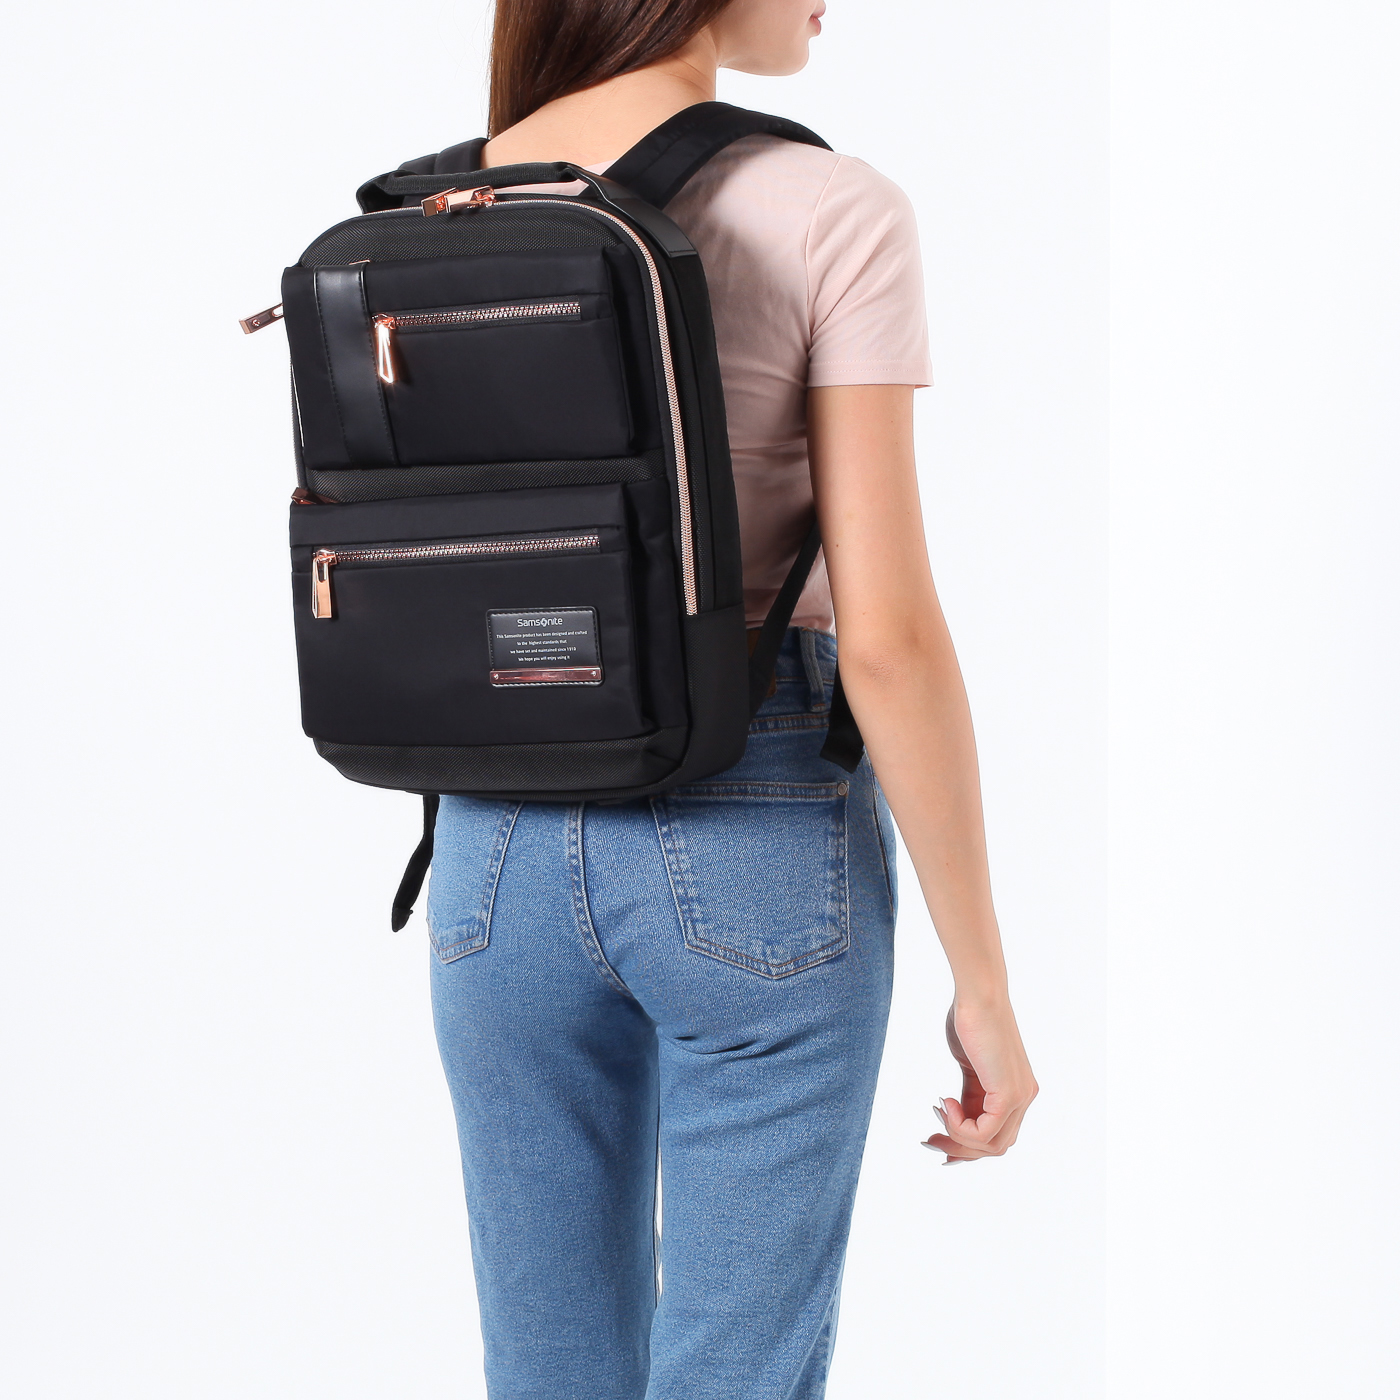 Рюкзак для ноутбука с креплением на ручку чемодана Samsonite Openroad Lady